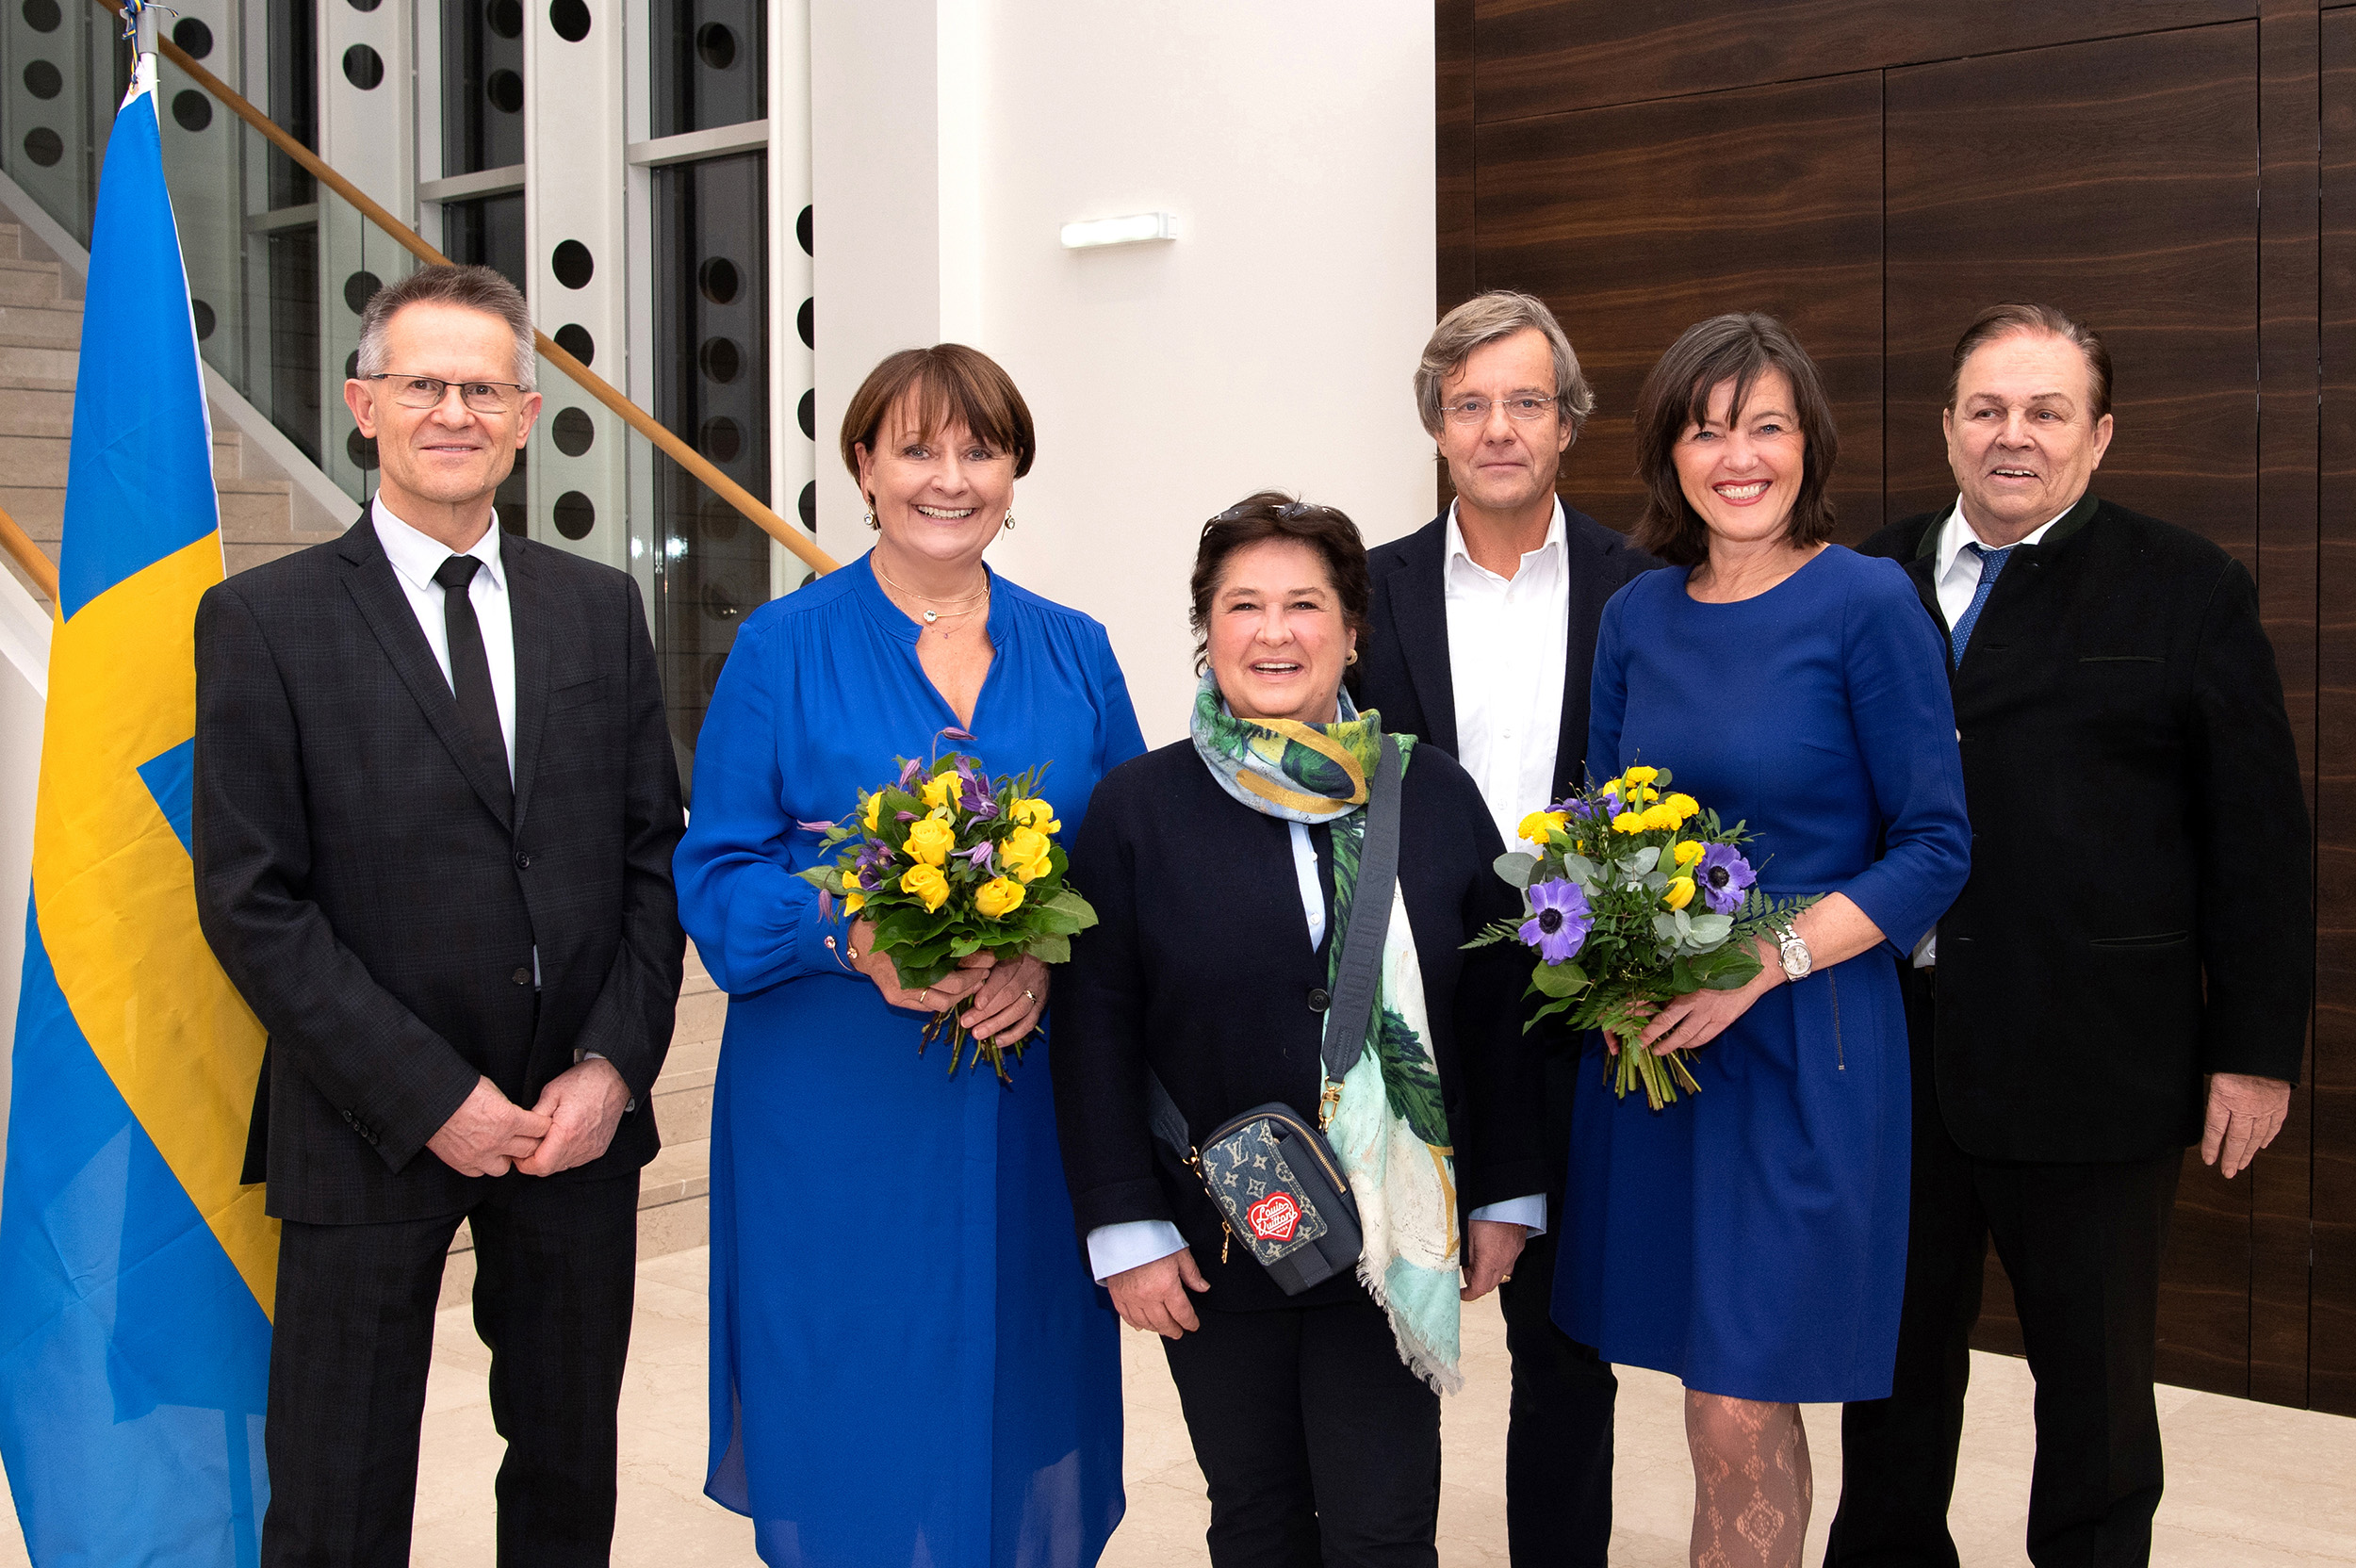 Sechs Personen darunter Frau Herta Stockbauer stehen in der BKS Bank Zentrale vor dem Stiegenaufgang. Links im Bild ist die schwedische Flagge zu sehen.